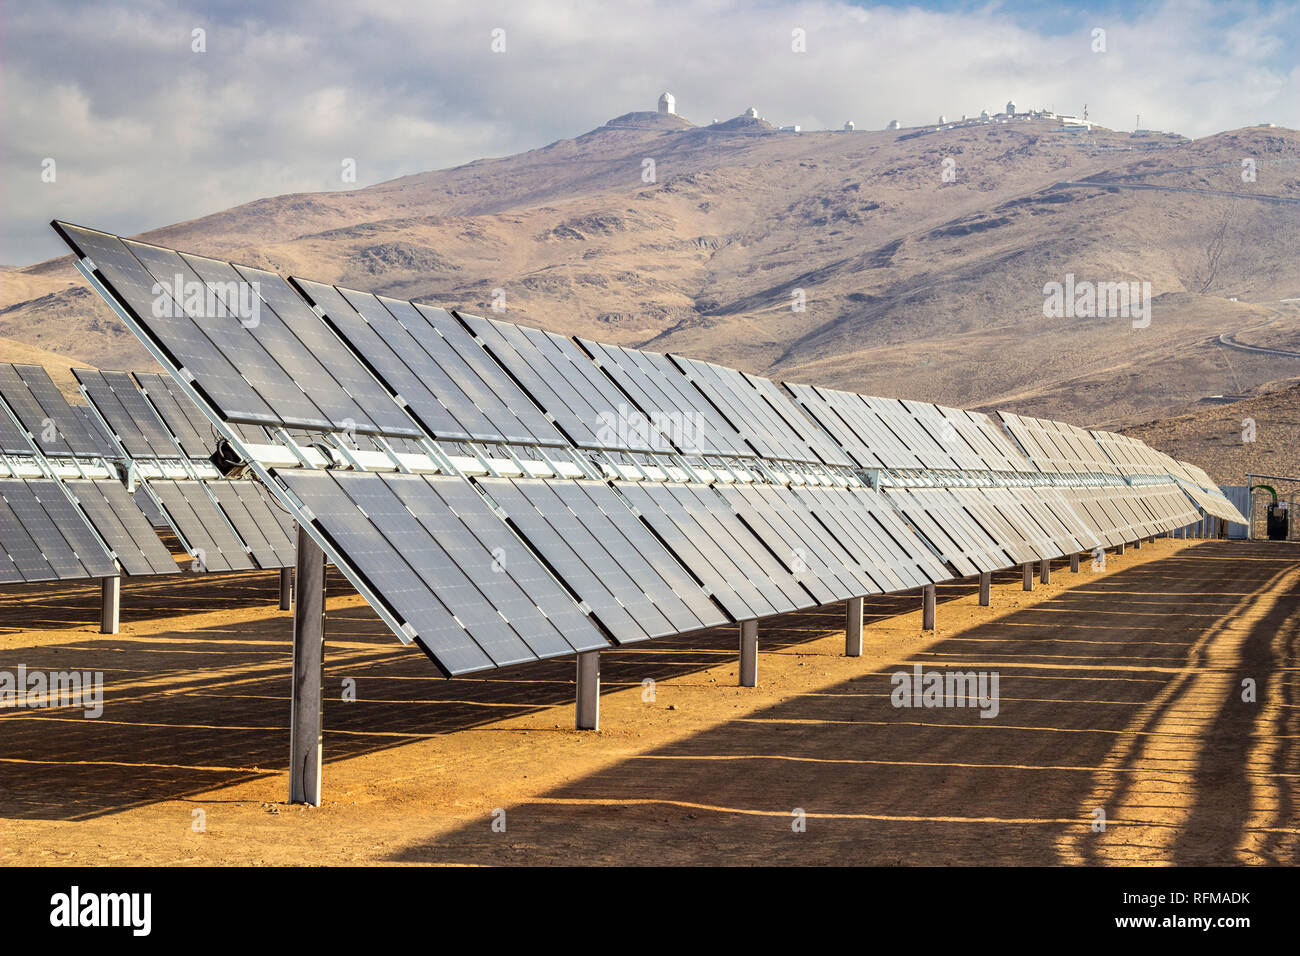 Modules d'énergie solaire Bifacial à la centrale d'énergie solaire dans le désert d'Atacama. Combattre le changement climatique et le réchauffement climatique avec des ressources durables Banque D'Images